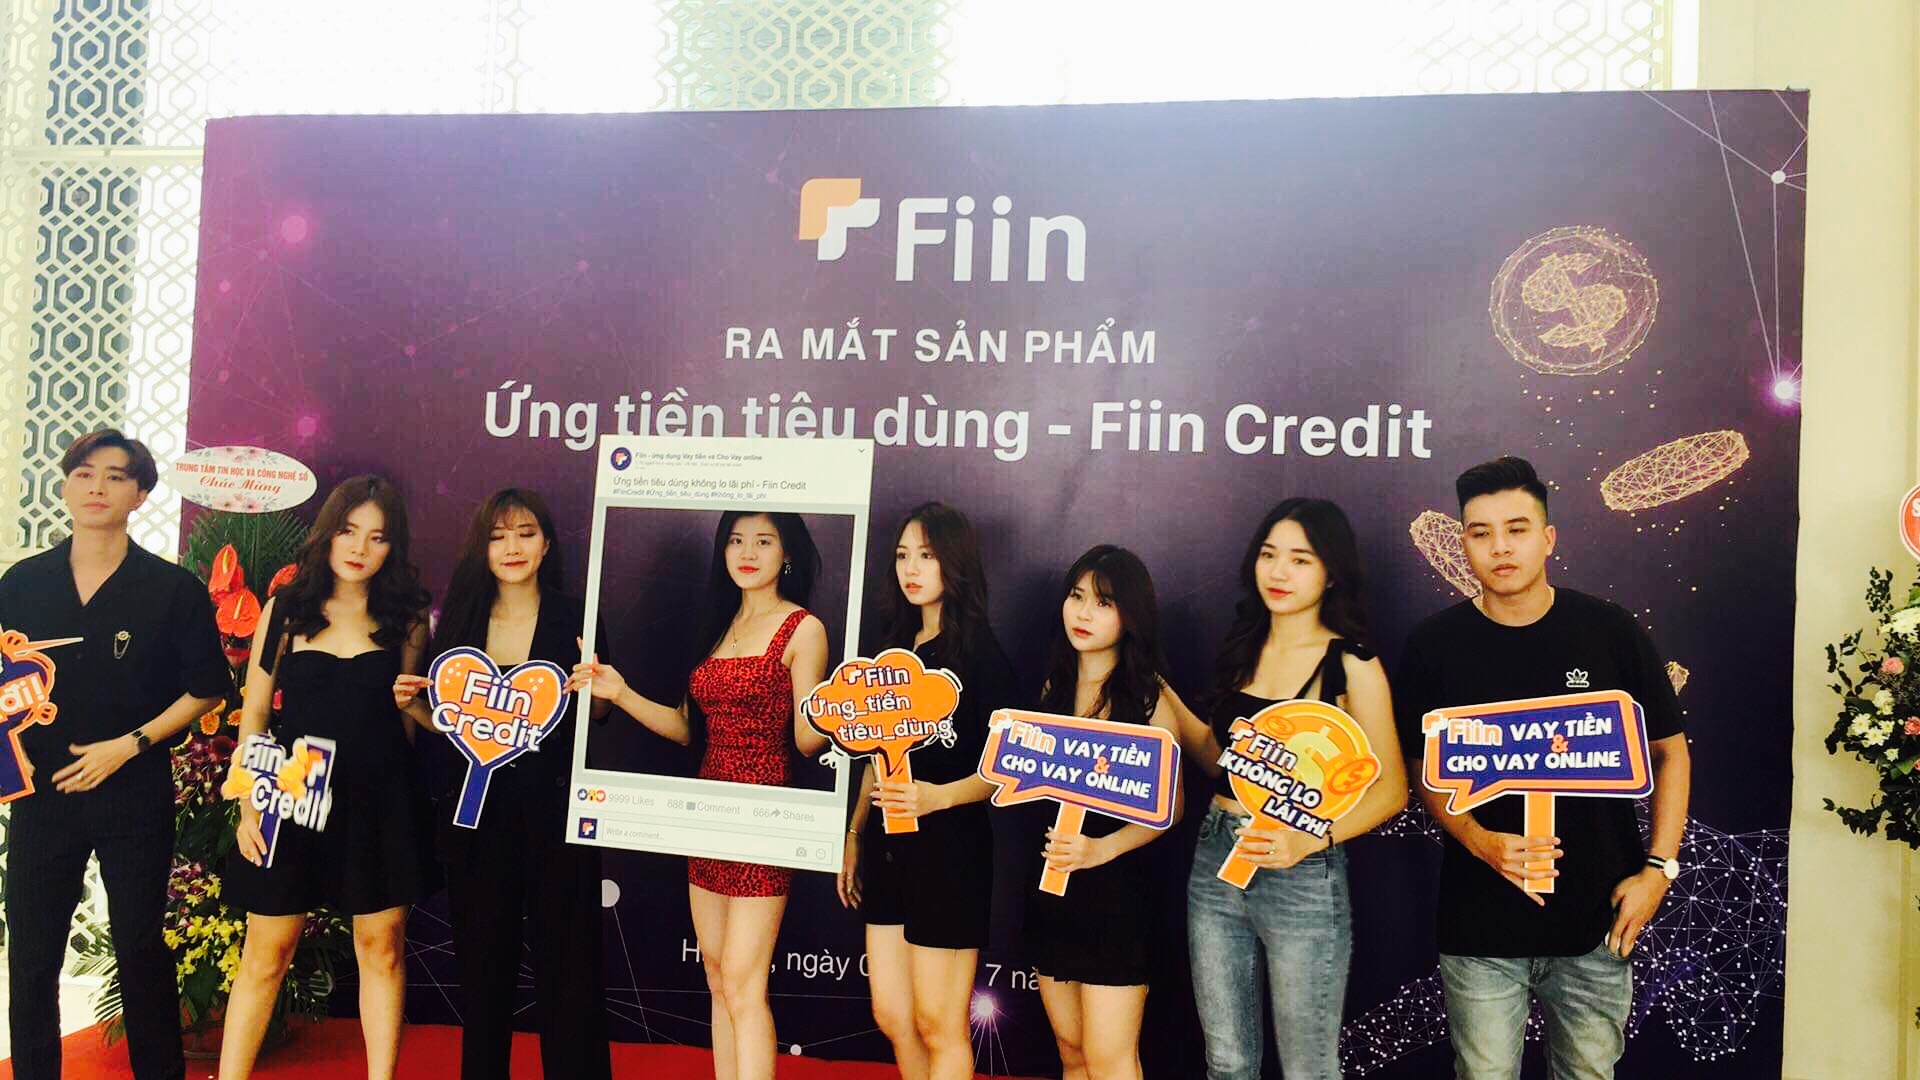 Những bạn trẻ tham gia sự kiện Ứng tiền tiêu dùng - Fiin Credit